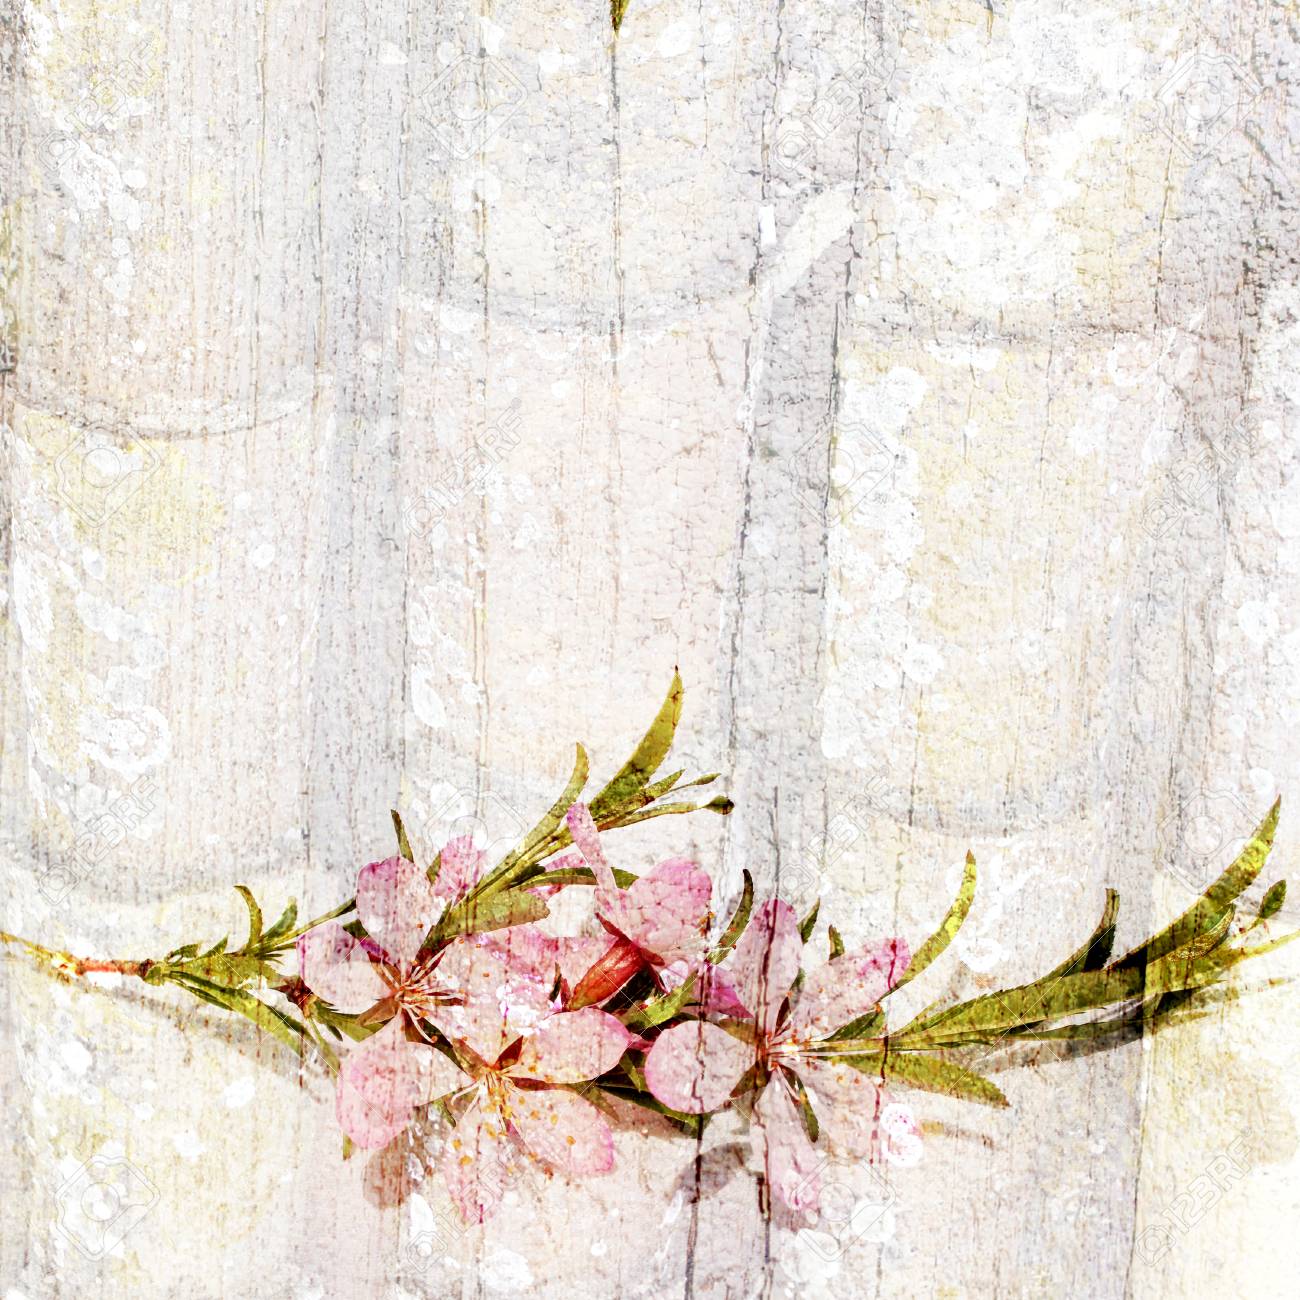 Vintage Floral Background Grunge Old Texture